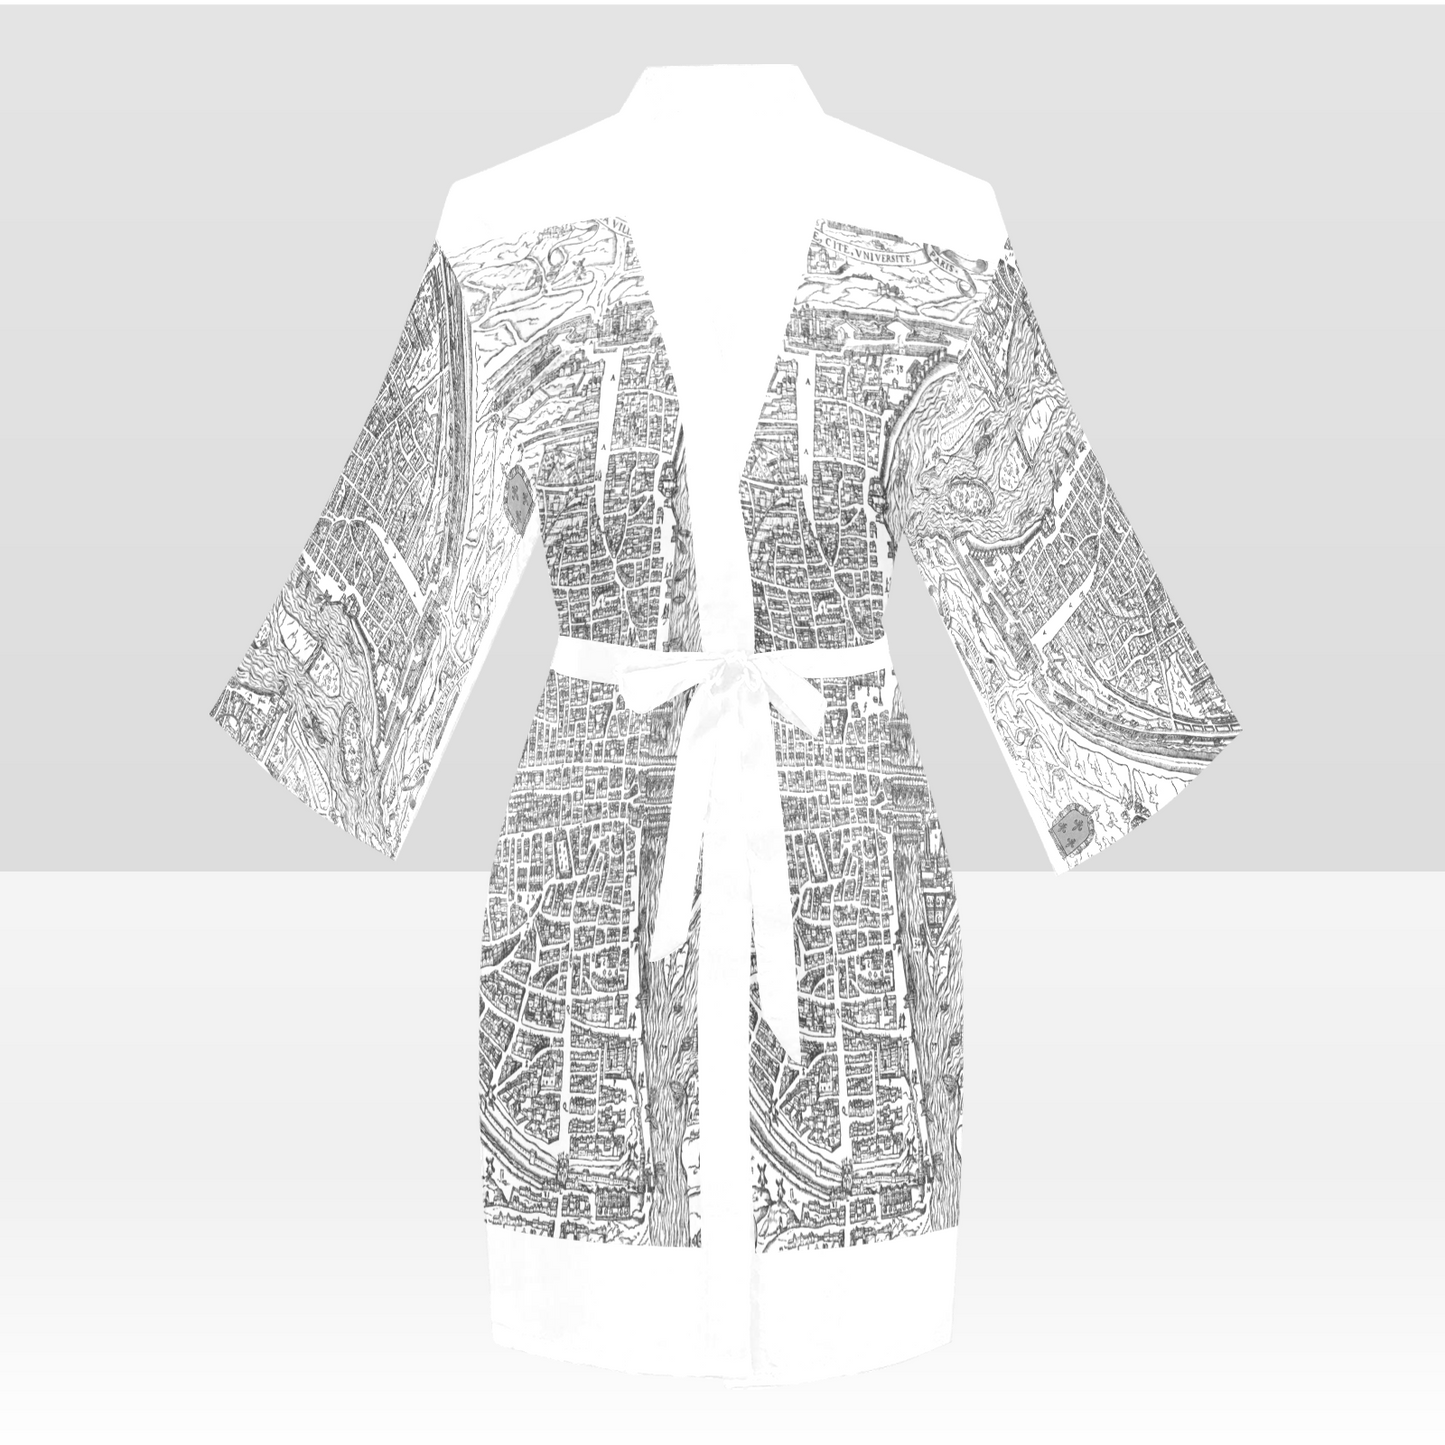 Antique Map Kimono Robe, Black or White Trim, Sizes XS to 2XL, Design 47